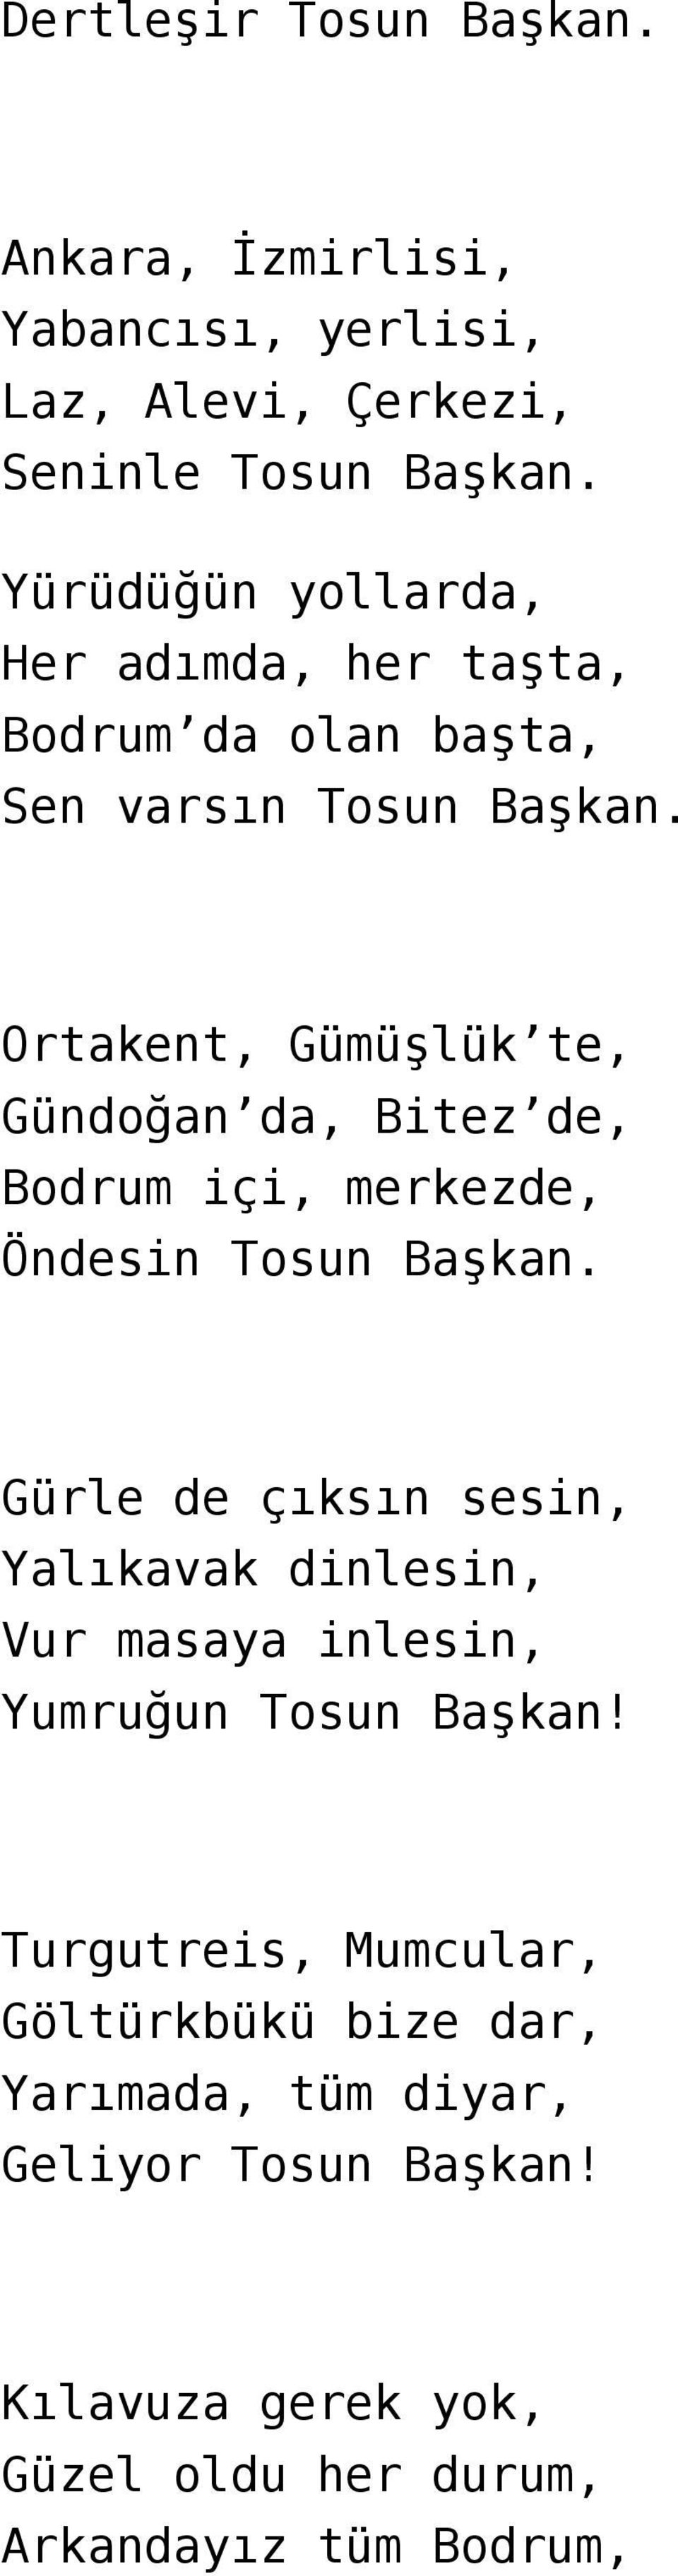 Ortakent, Gümüşlük te, Gündoğan da, Bitez de, Bodrum içi, merkezde, Öndesin Tosun Başkan.